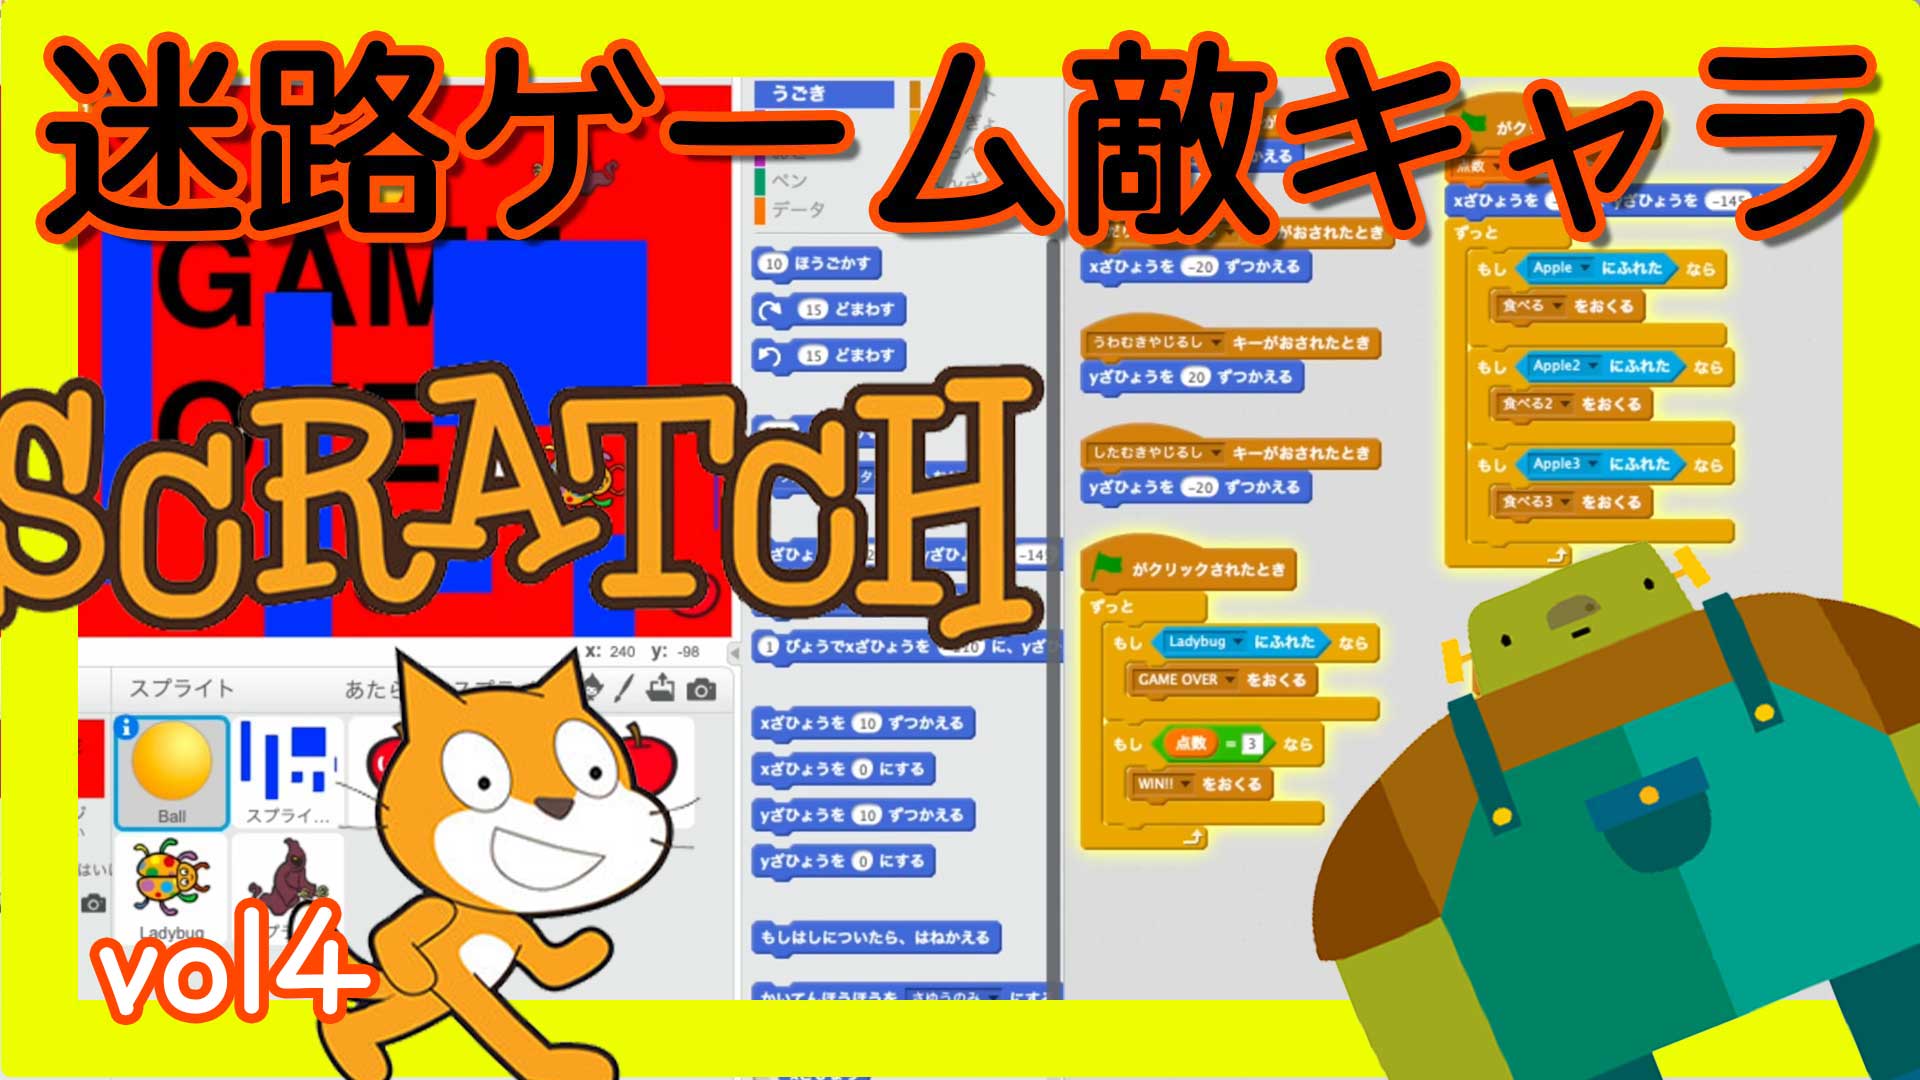 スクラッチゲームプログラミング 迷路敵キャラvol4 プロジェクションマッピング作り方 Scratch Touchdesignerの使い方